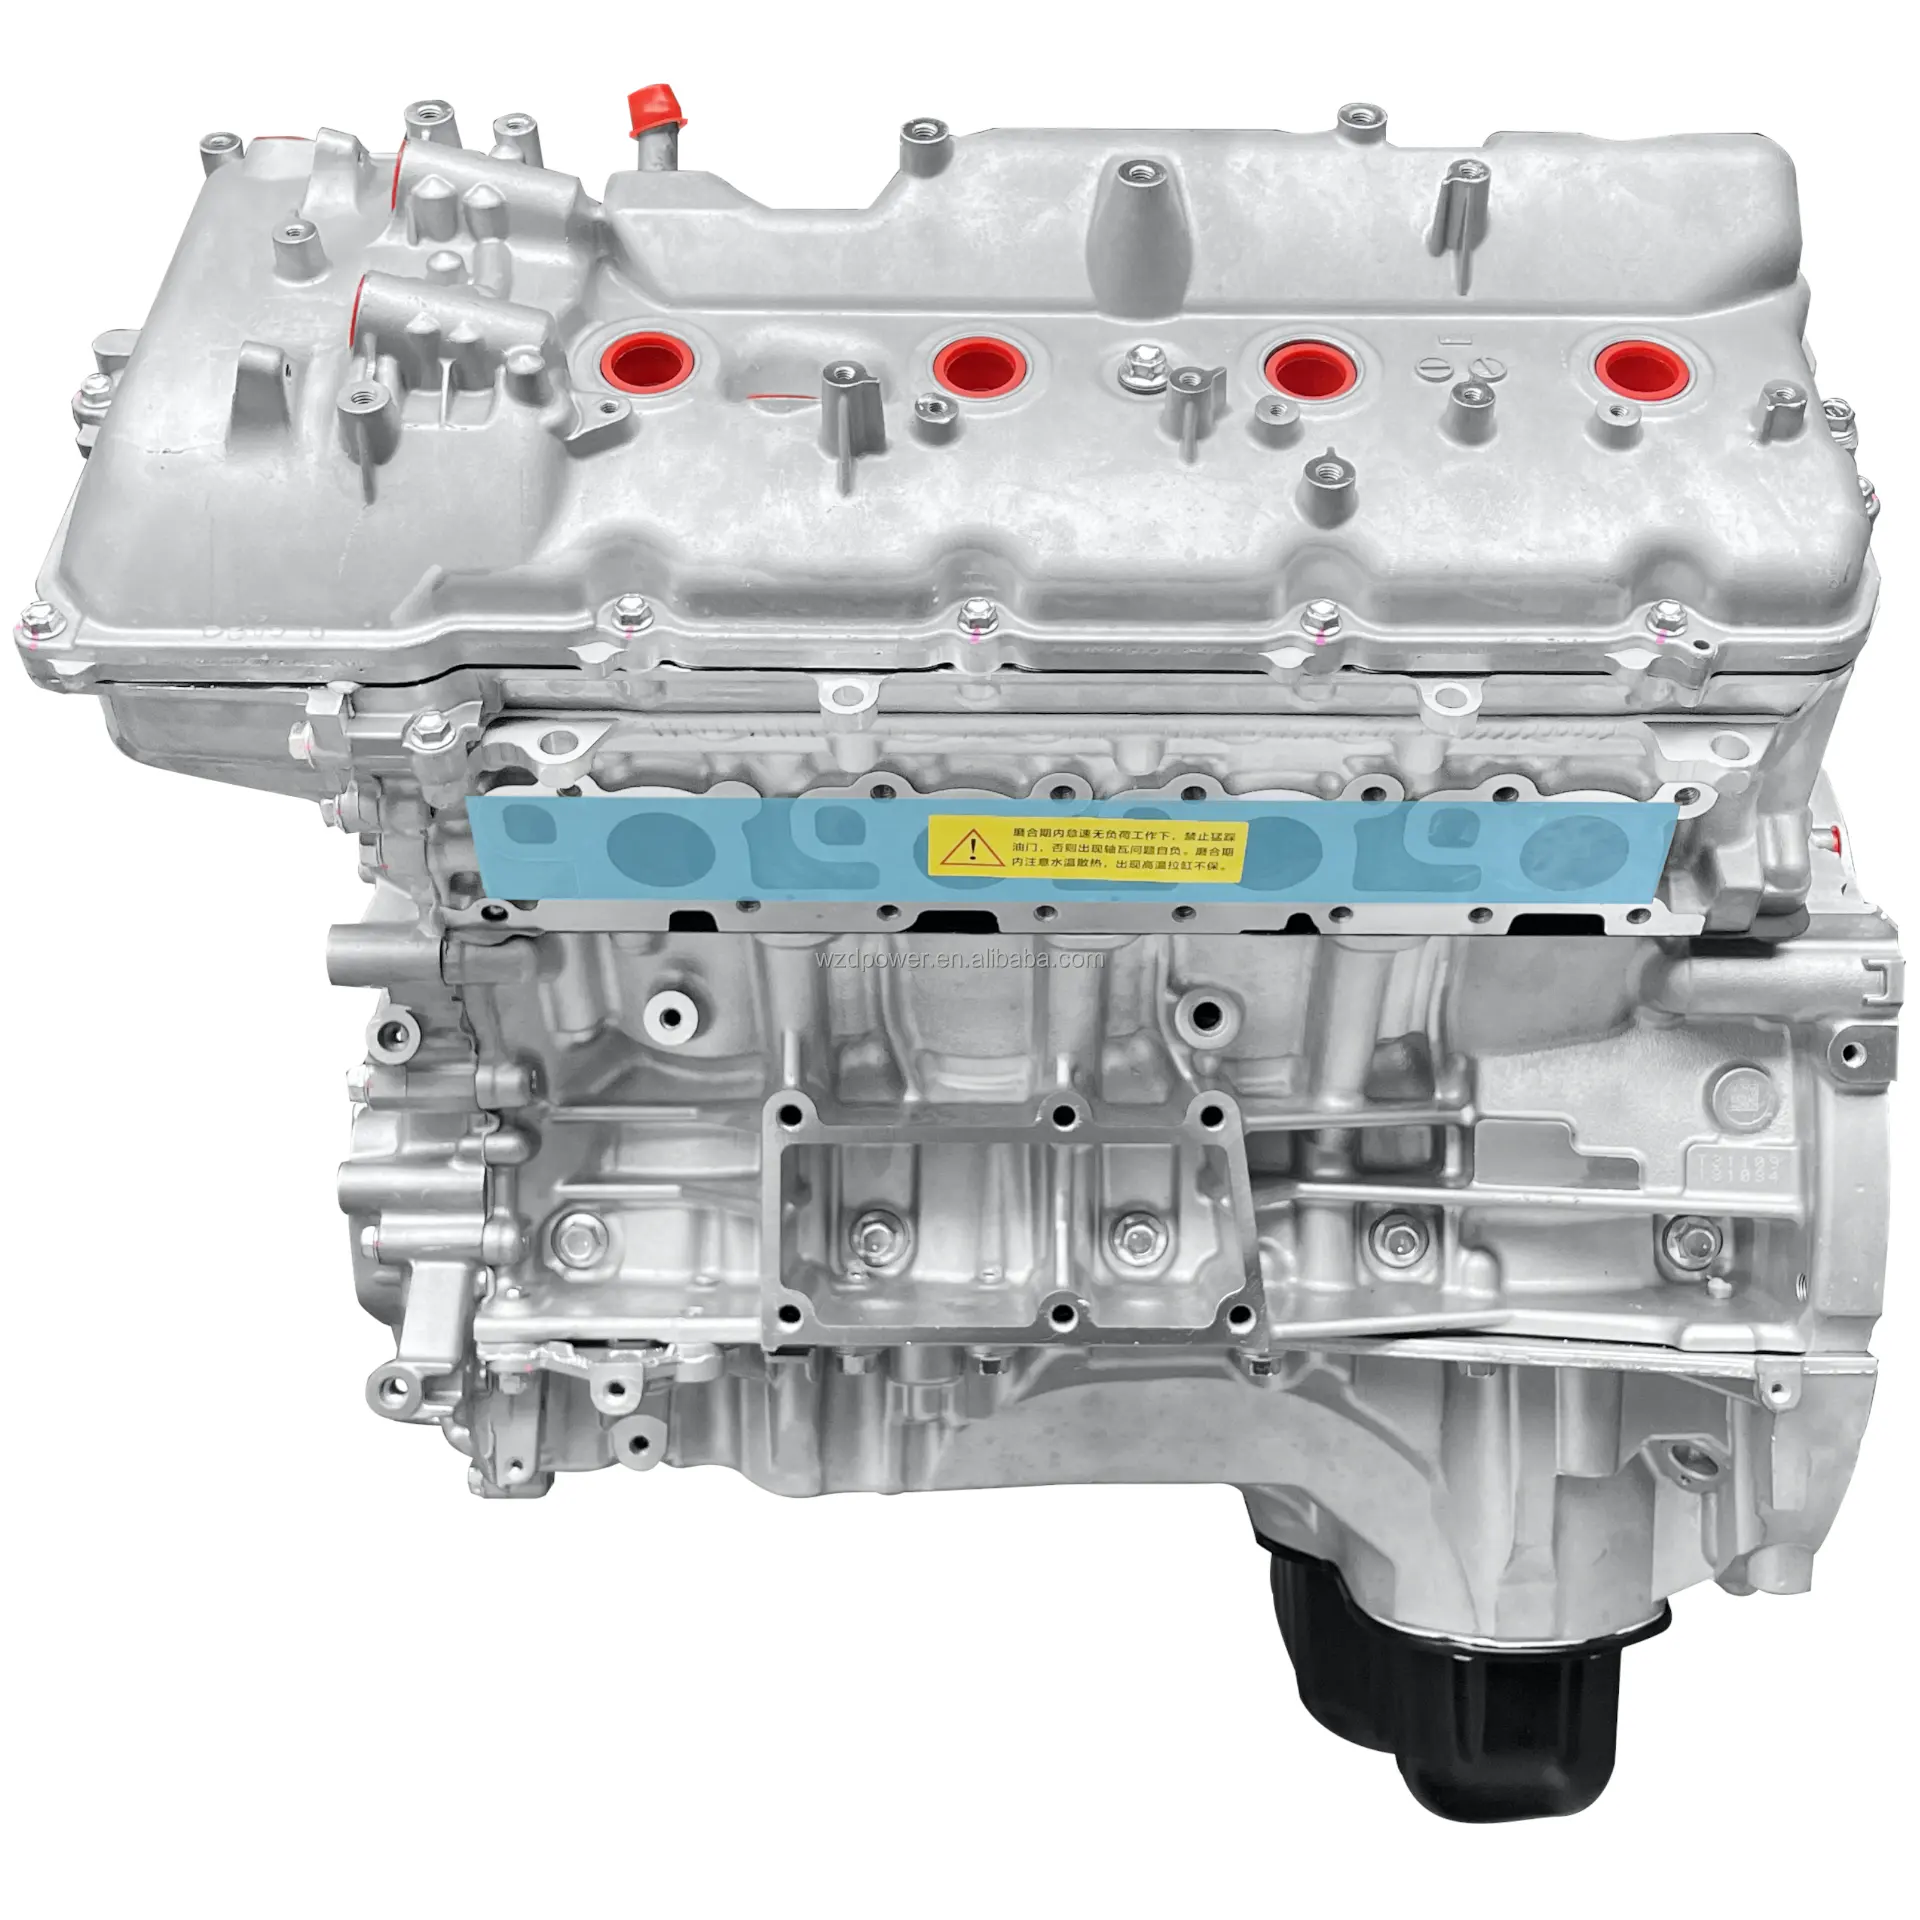 툰드라 세쿼이아 랜드 크루저 렉서스 LS GS GX 460 모델과 호환되는 새로운 도요타 1UR-FE 4.6L V8 가솔린 엔진